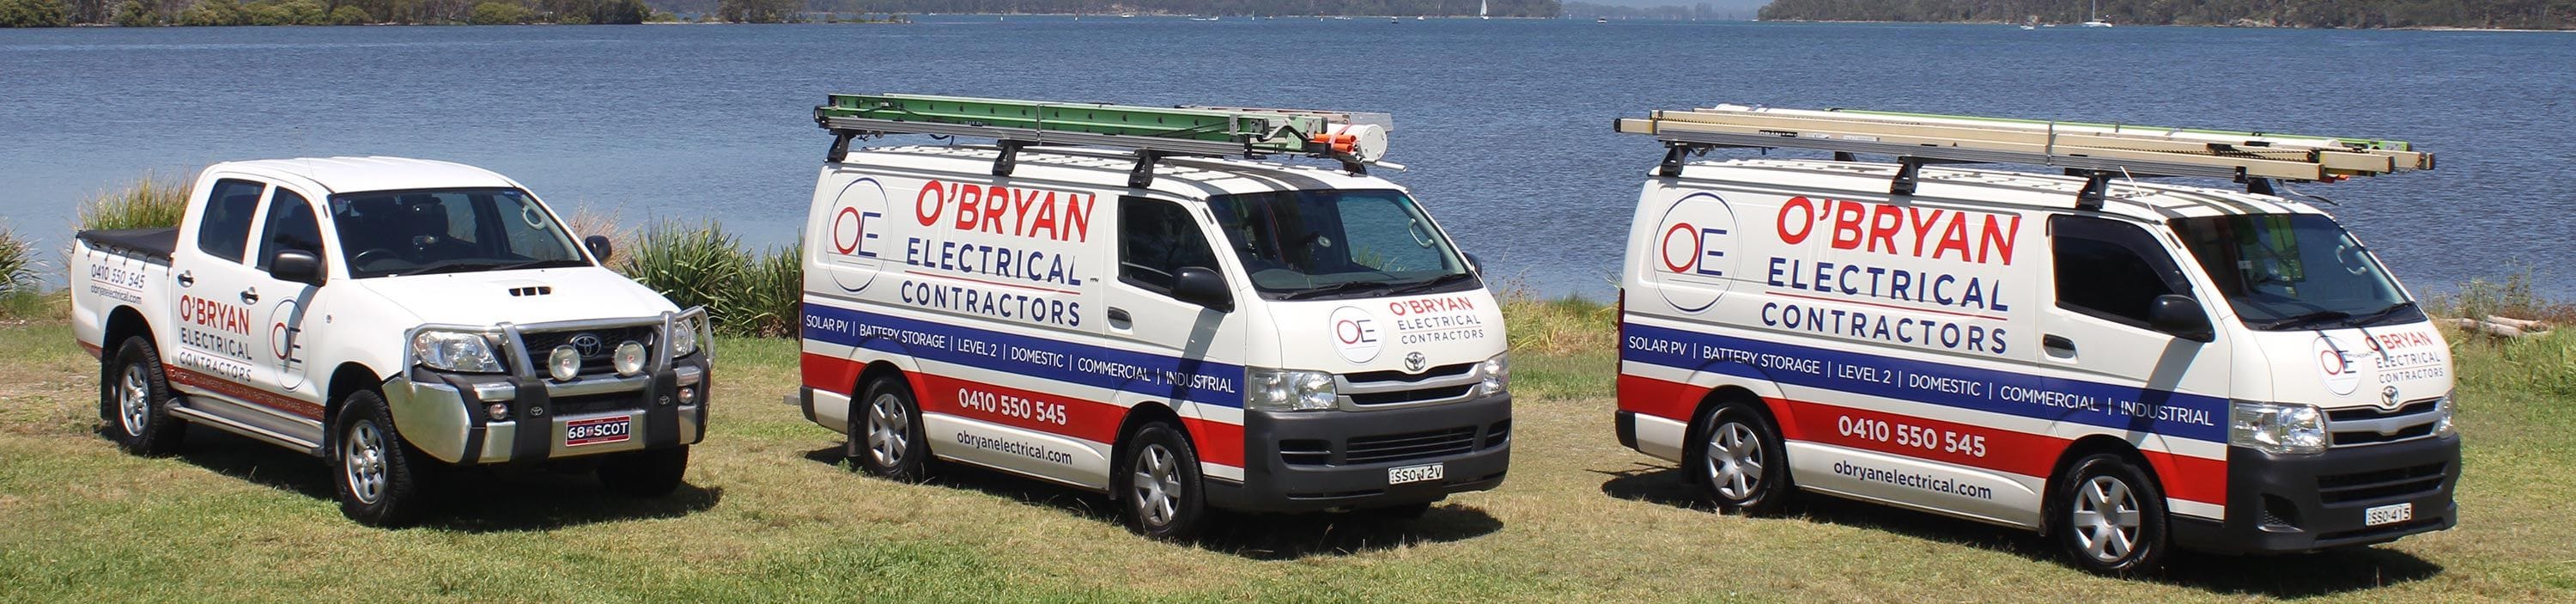 O'Bryan  Electrical Contractors Fleet